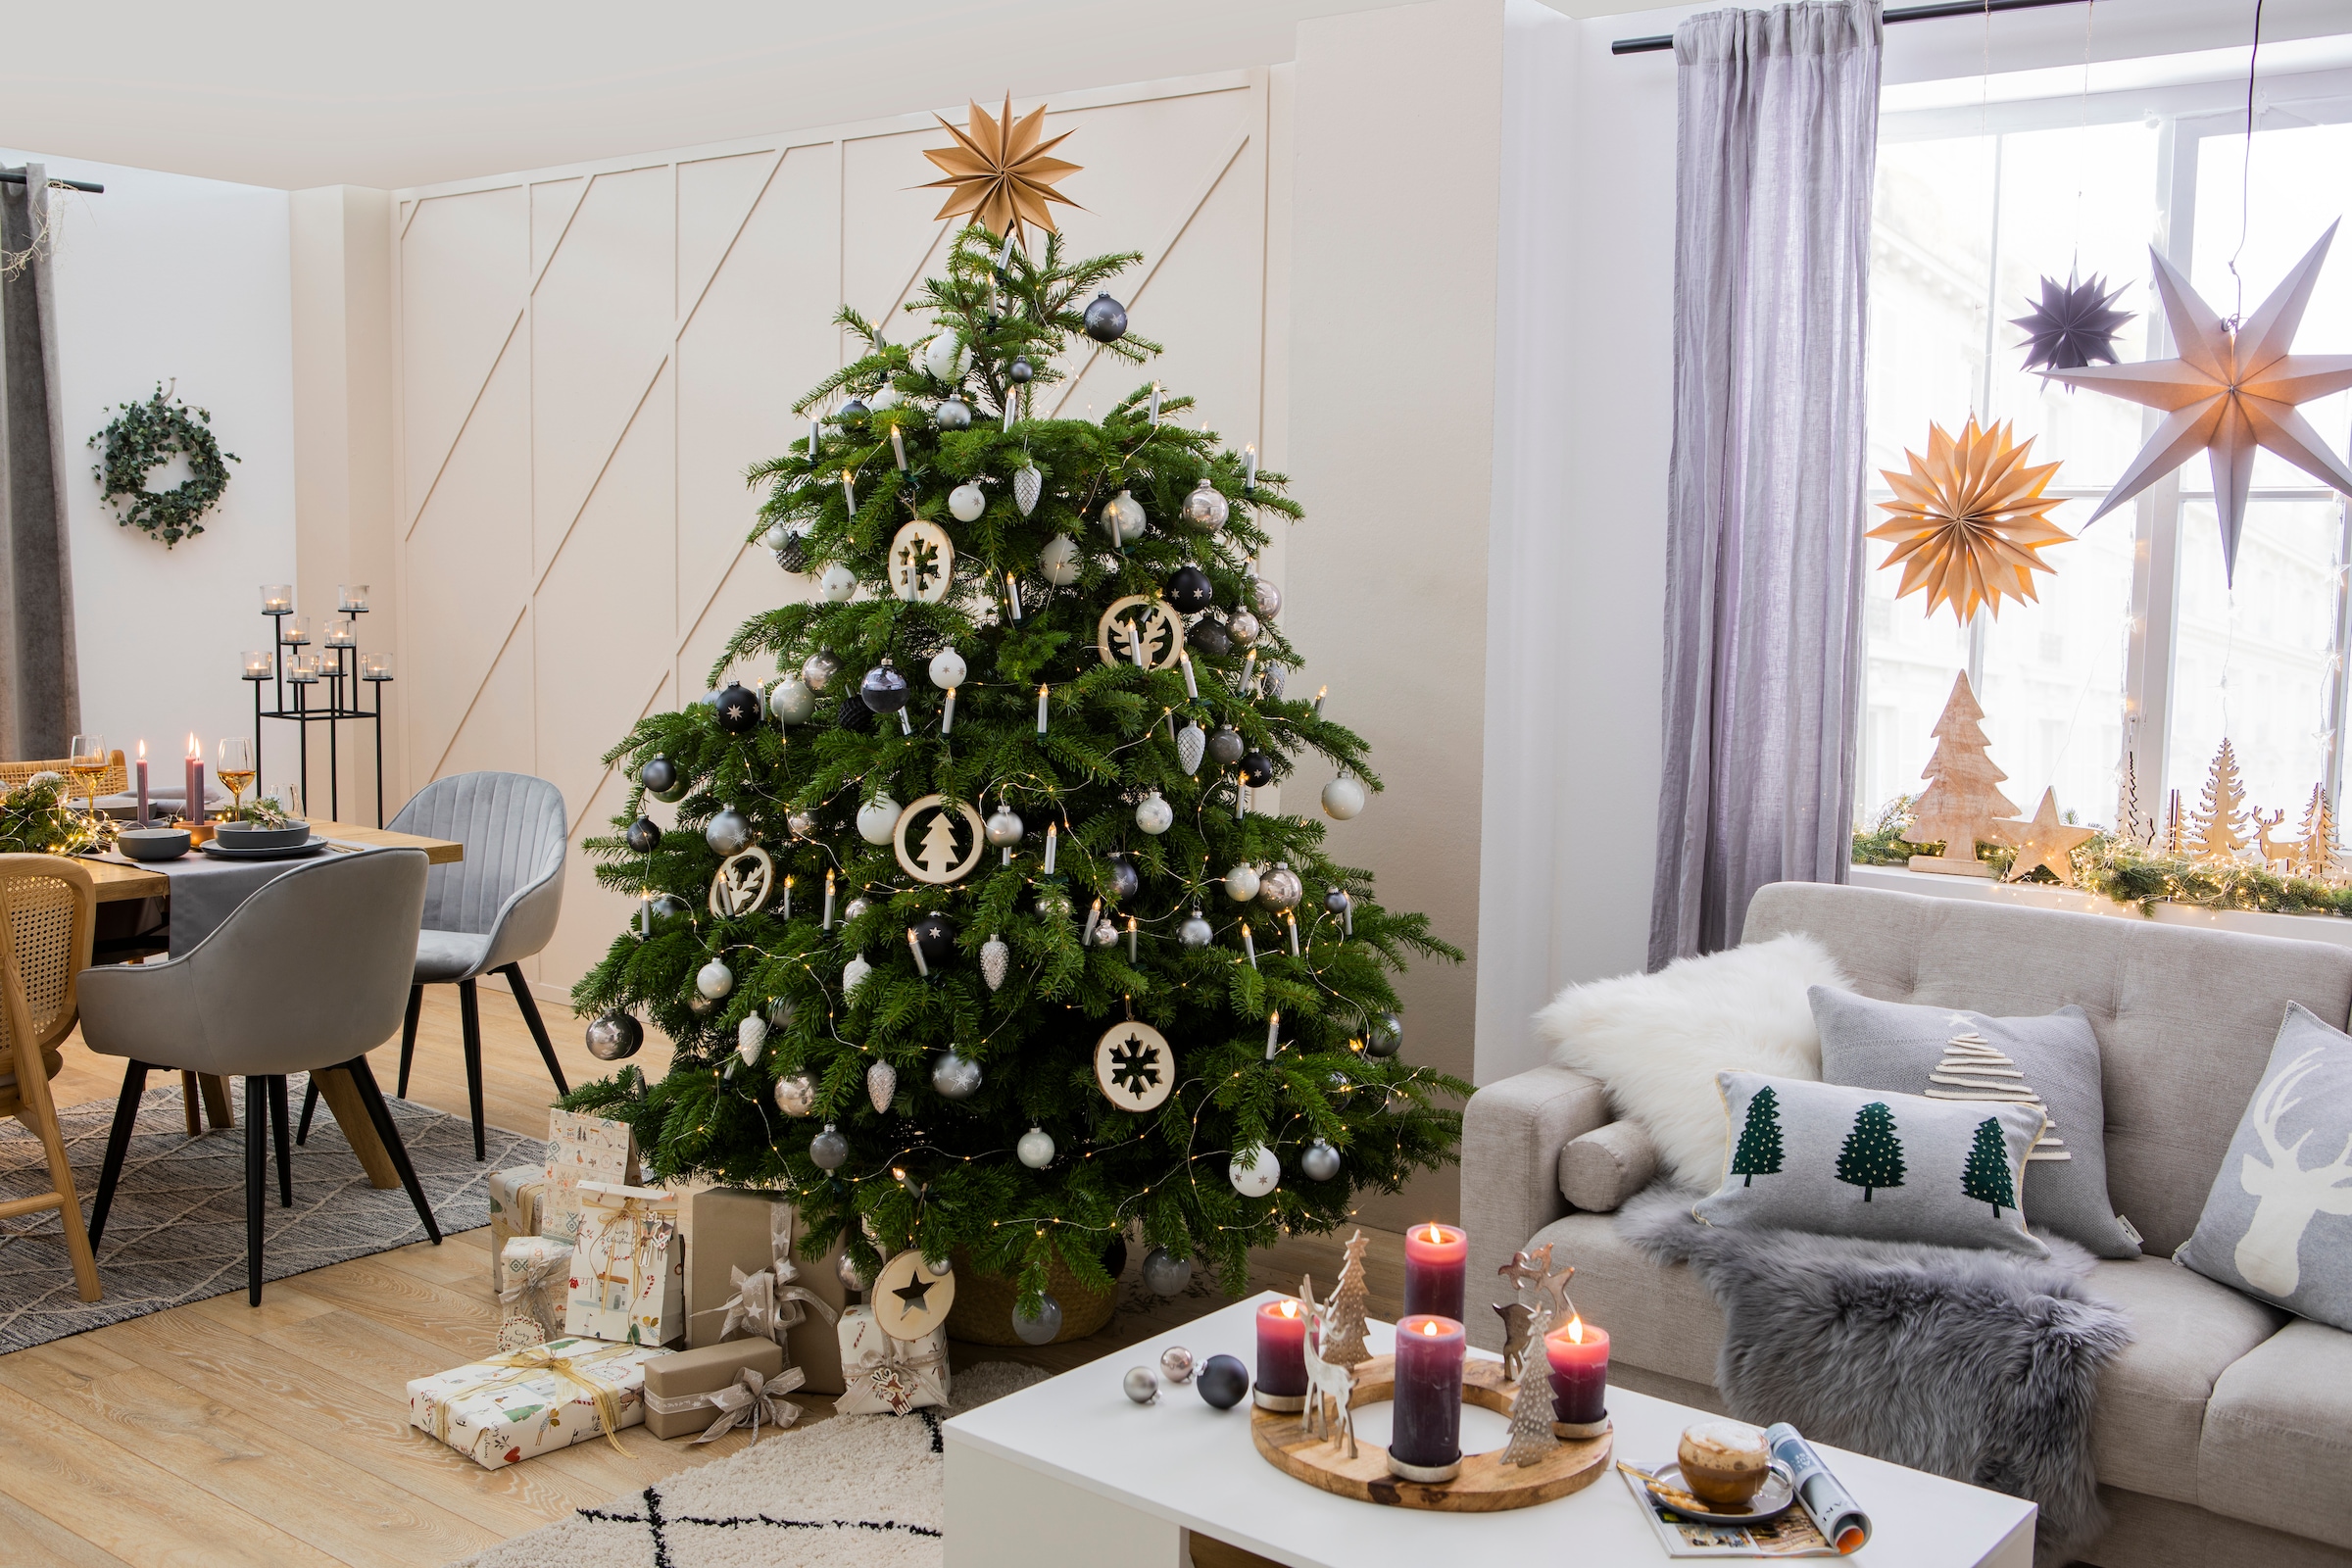 my home Weihnachtsbaumkugel »Chrome, Weihnachtsdeko, Christbaumschmuck, Christbaumkugeln Glas«, (Set, 30 St.), mundgeblasen und handdekoriert